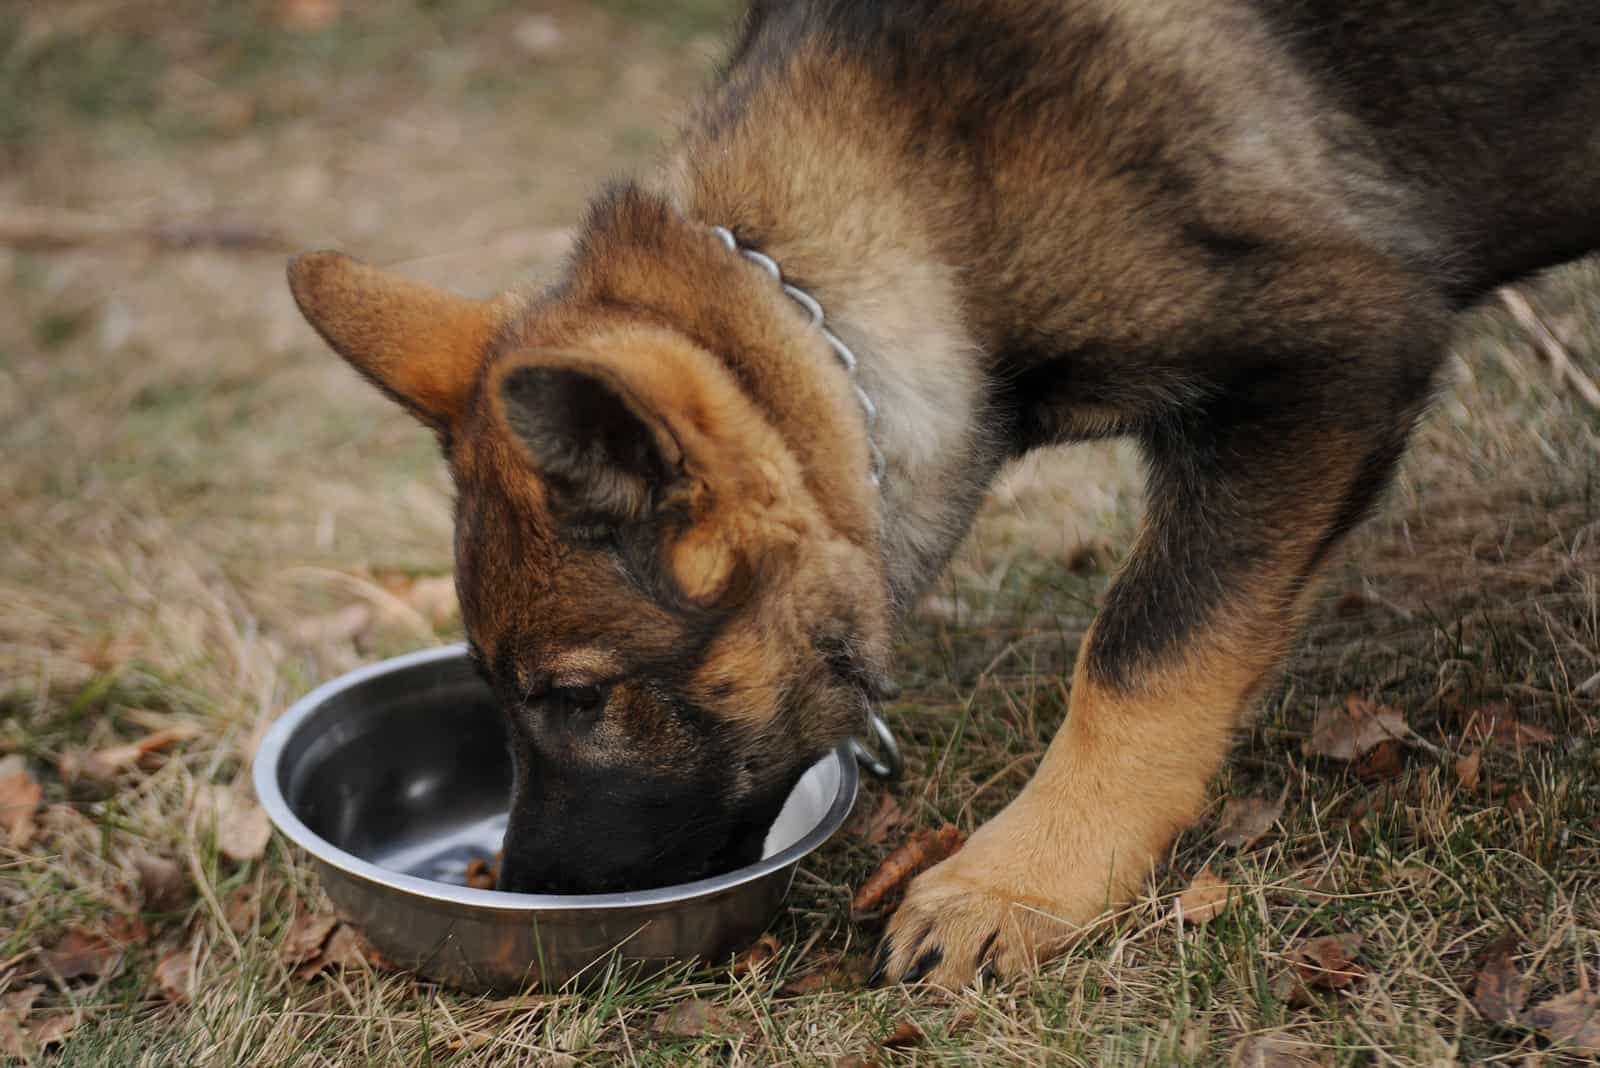 German shepherd puppy eating dry food outdoors